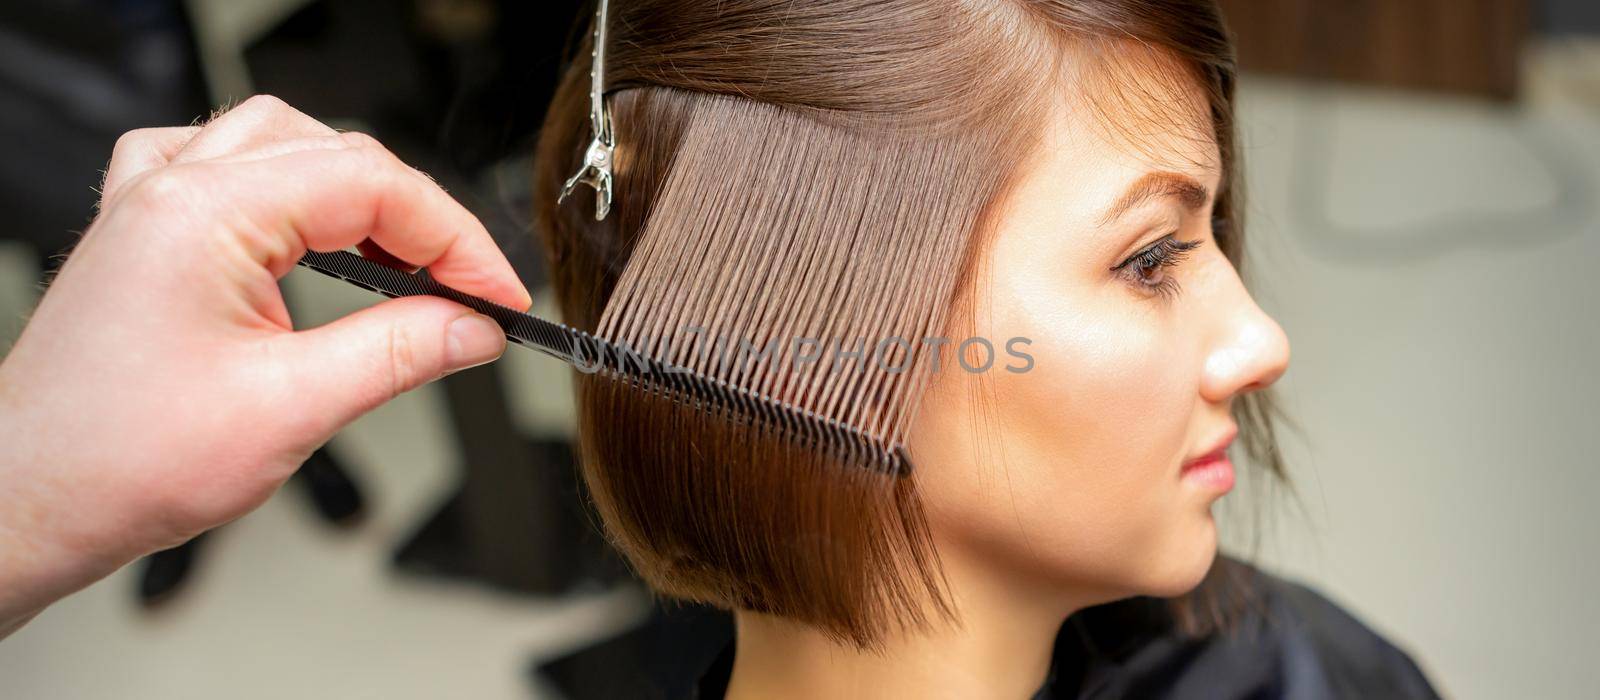 Hairdresser brushing straight female hair by okskukuruza